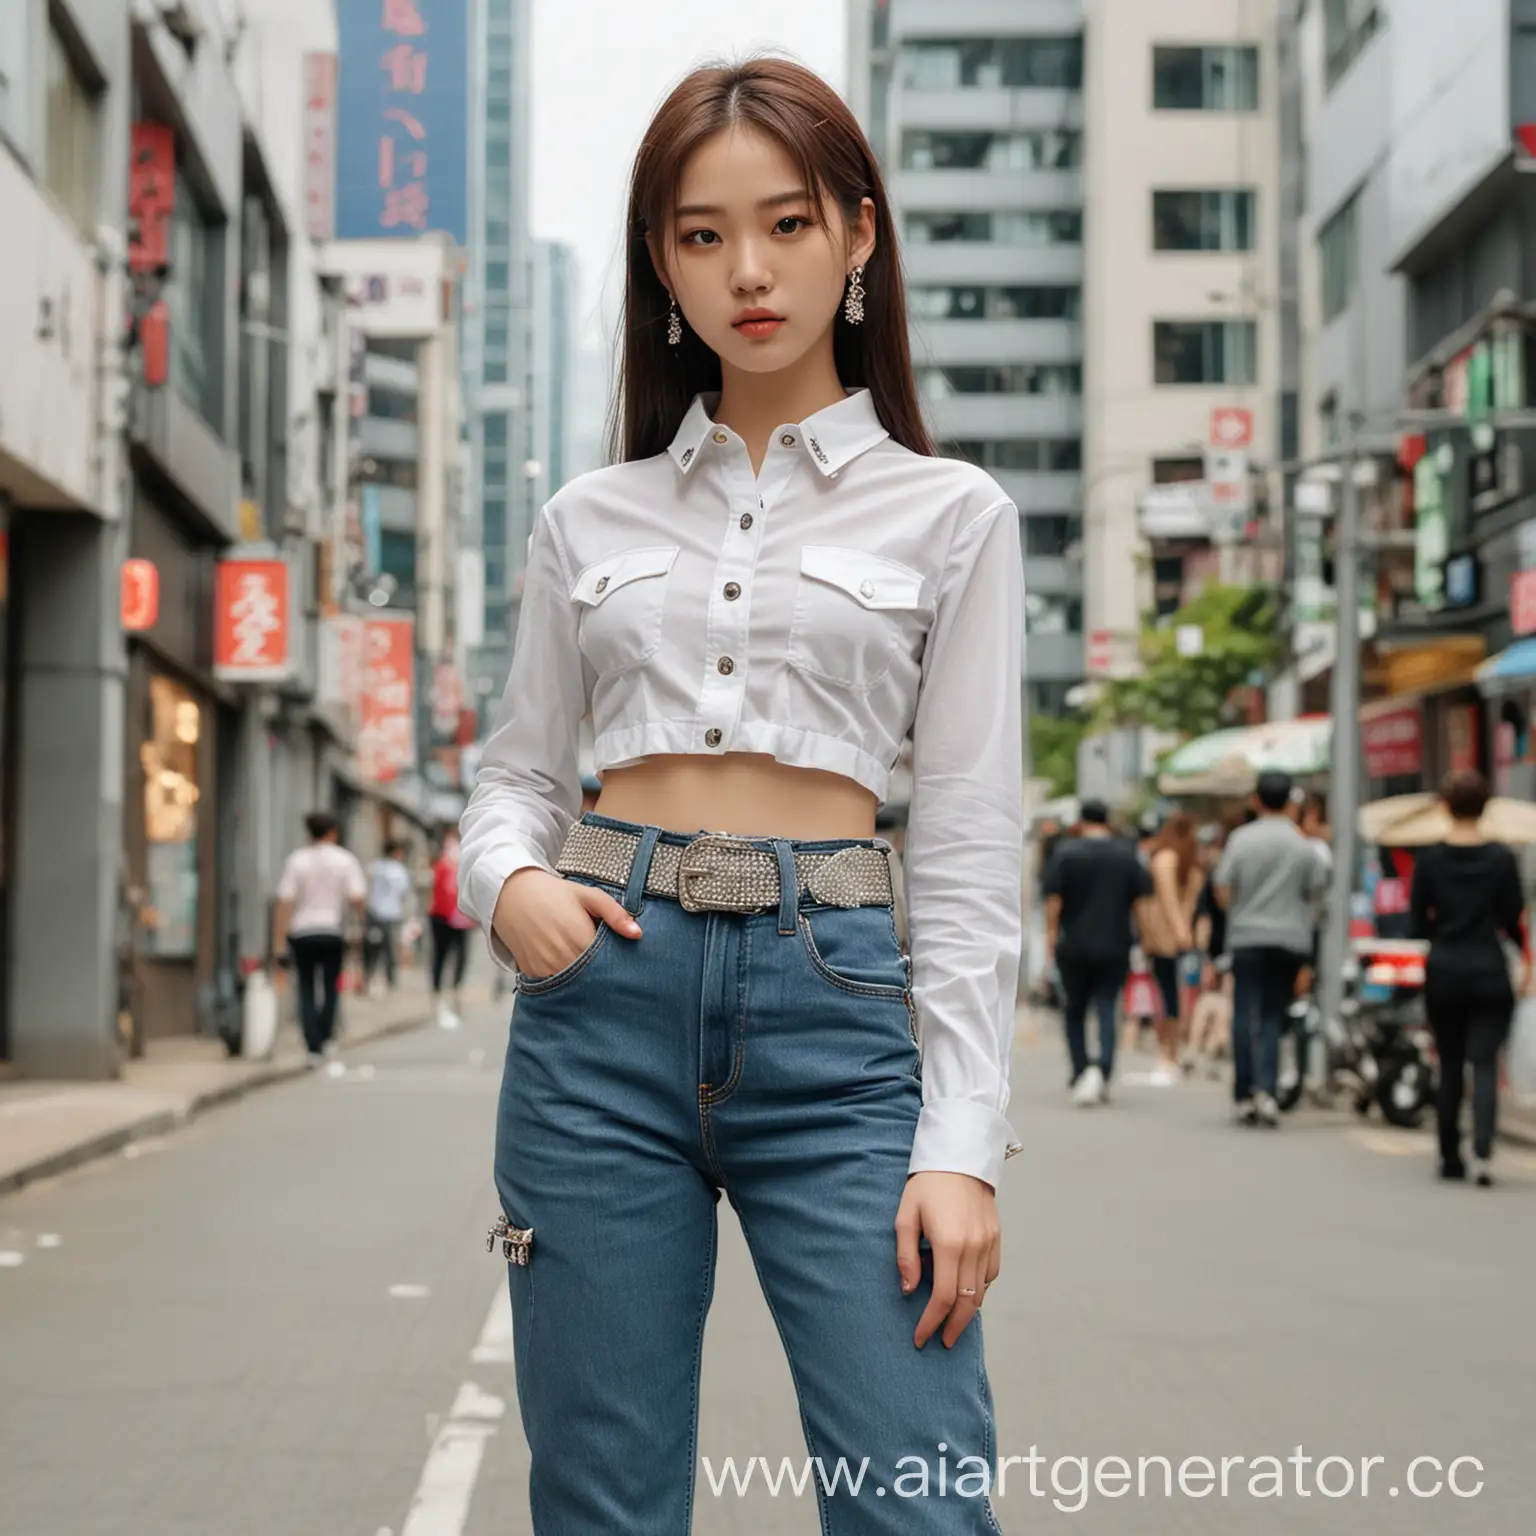 Stylish-Korean-Teen-in-Y2K-Fashion-with-Rhinestone-Belt-in-Seoul-City